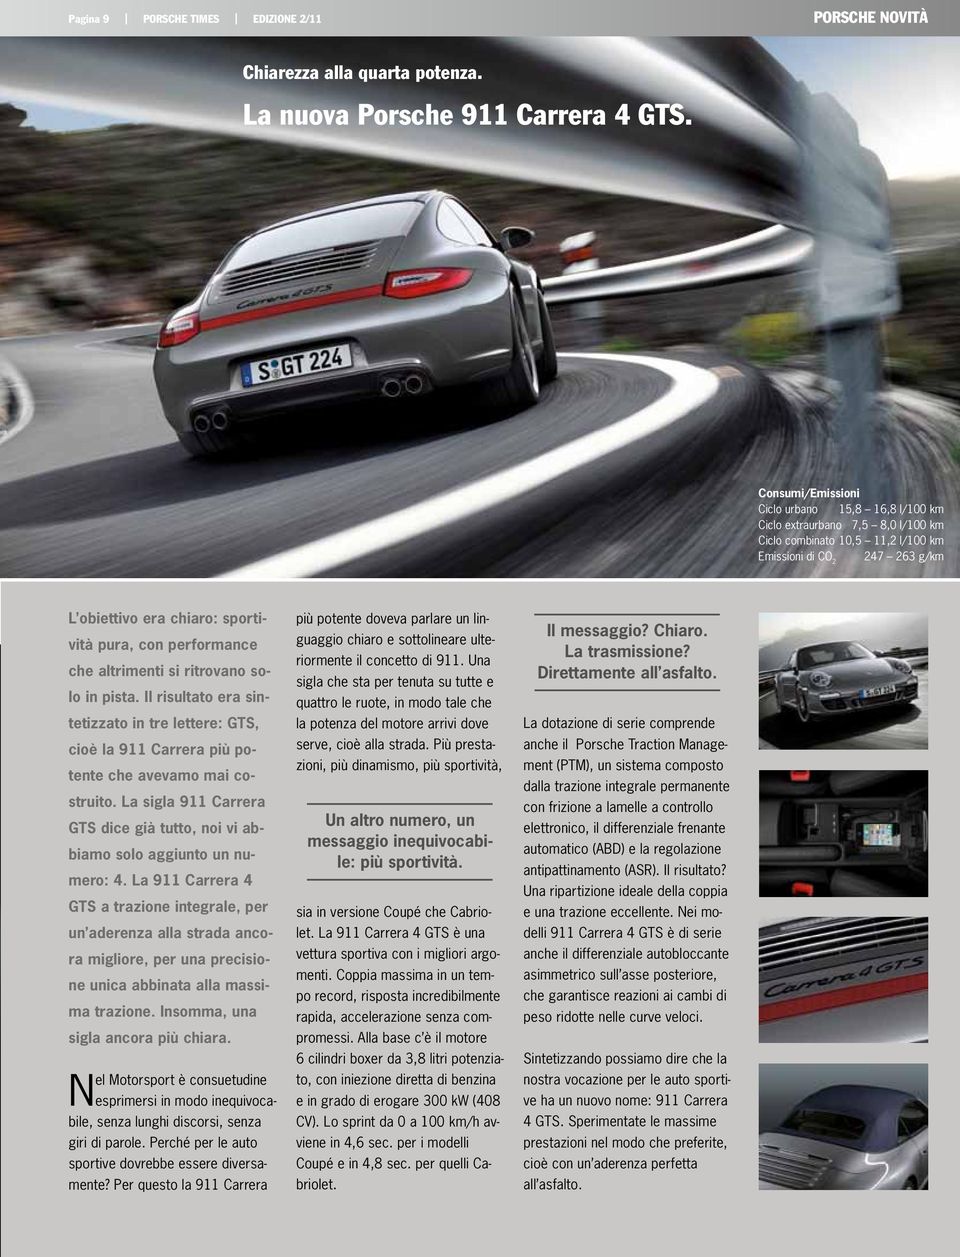 performance che altrimenti si ritrovano solo in pista. Il risultato era sintetizzato in tre lettere: GTS, cioè la 911 Carrera più potente che avevamo mai costruito.